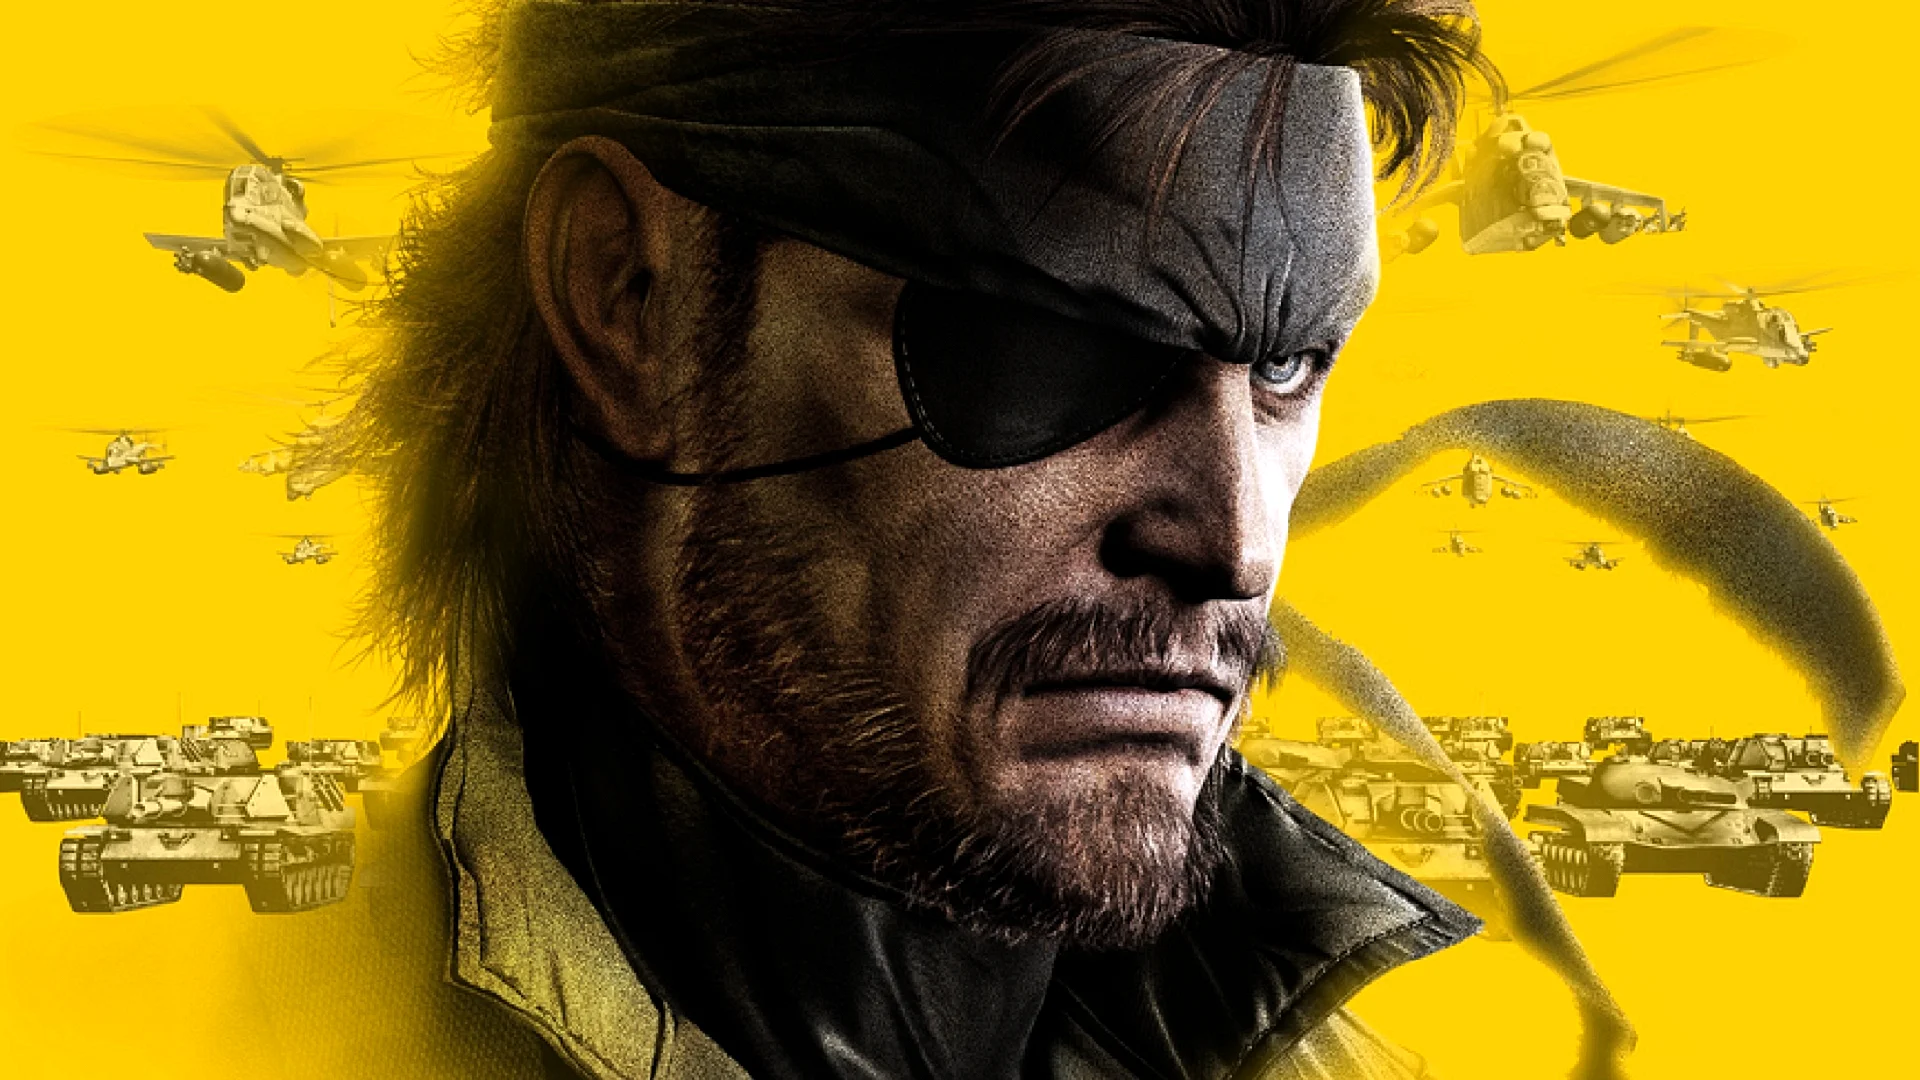 Metal Gear Solid Peace Walker Wallpaper